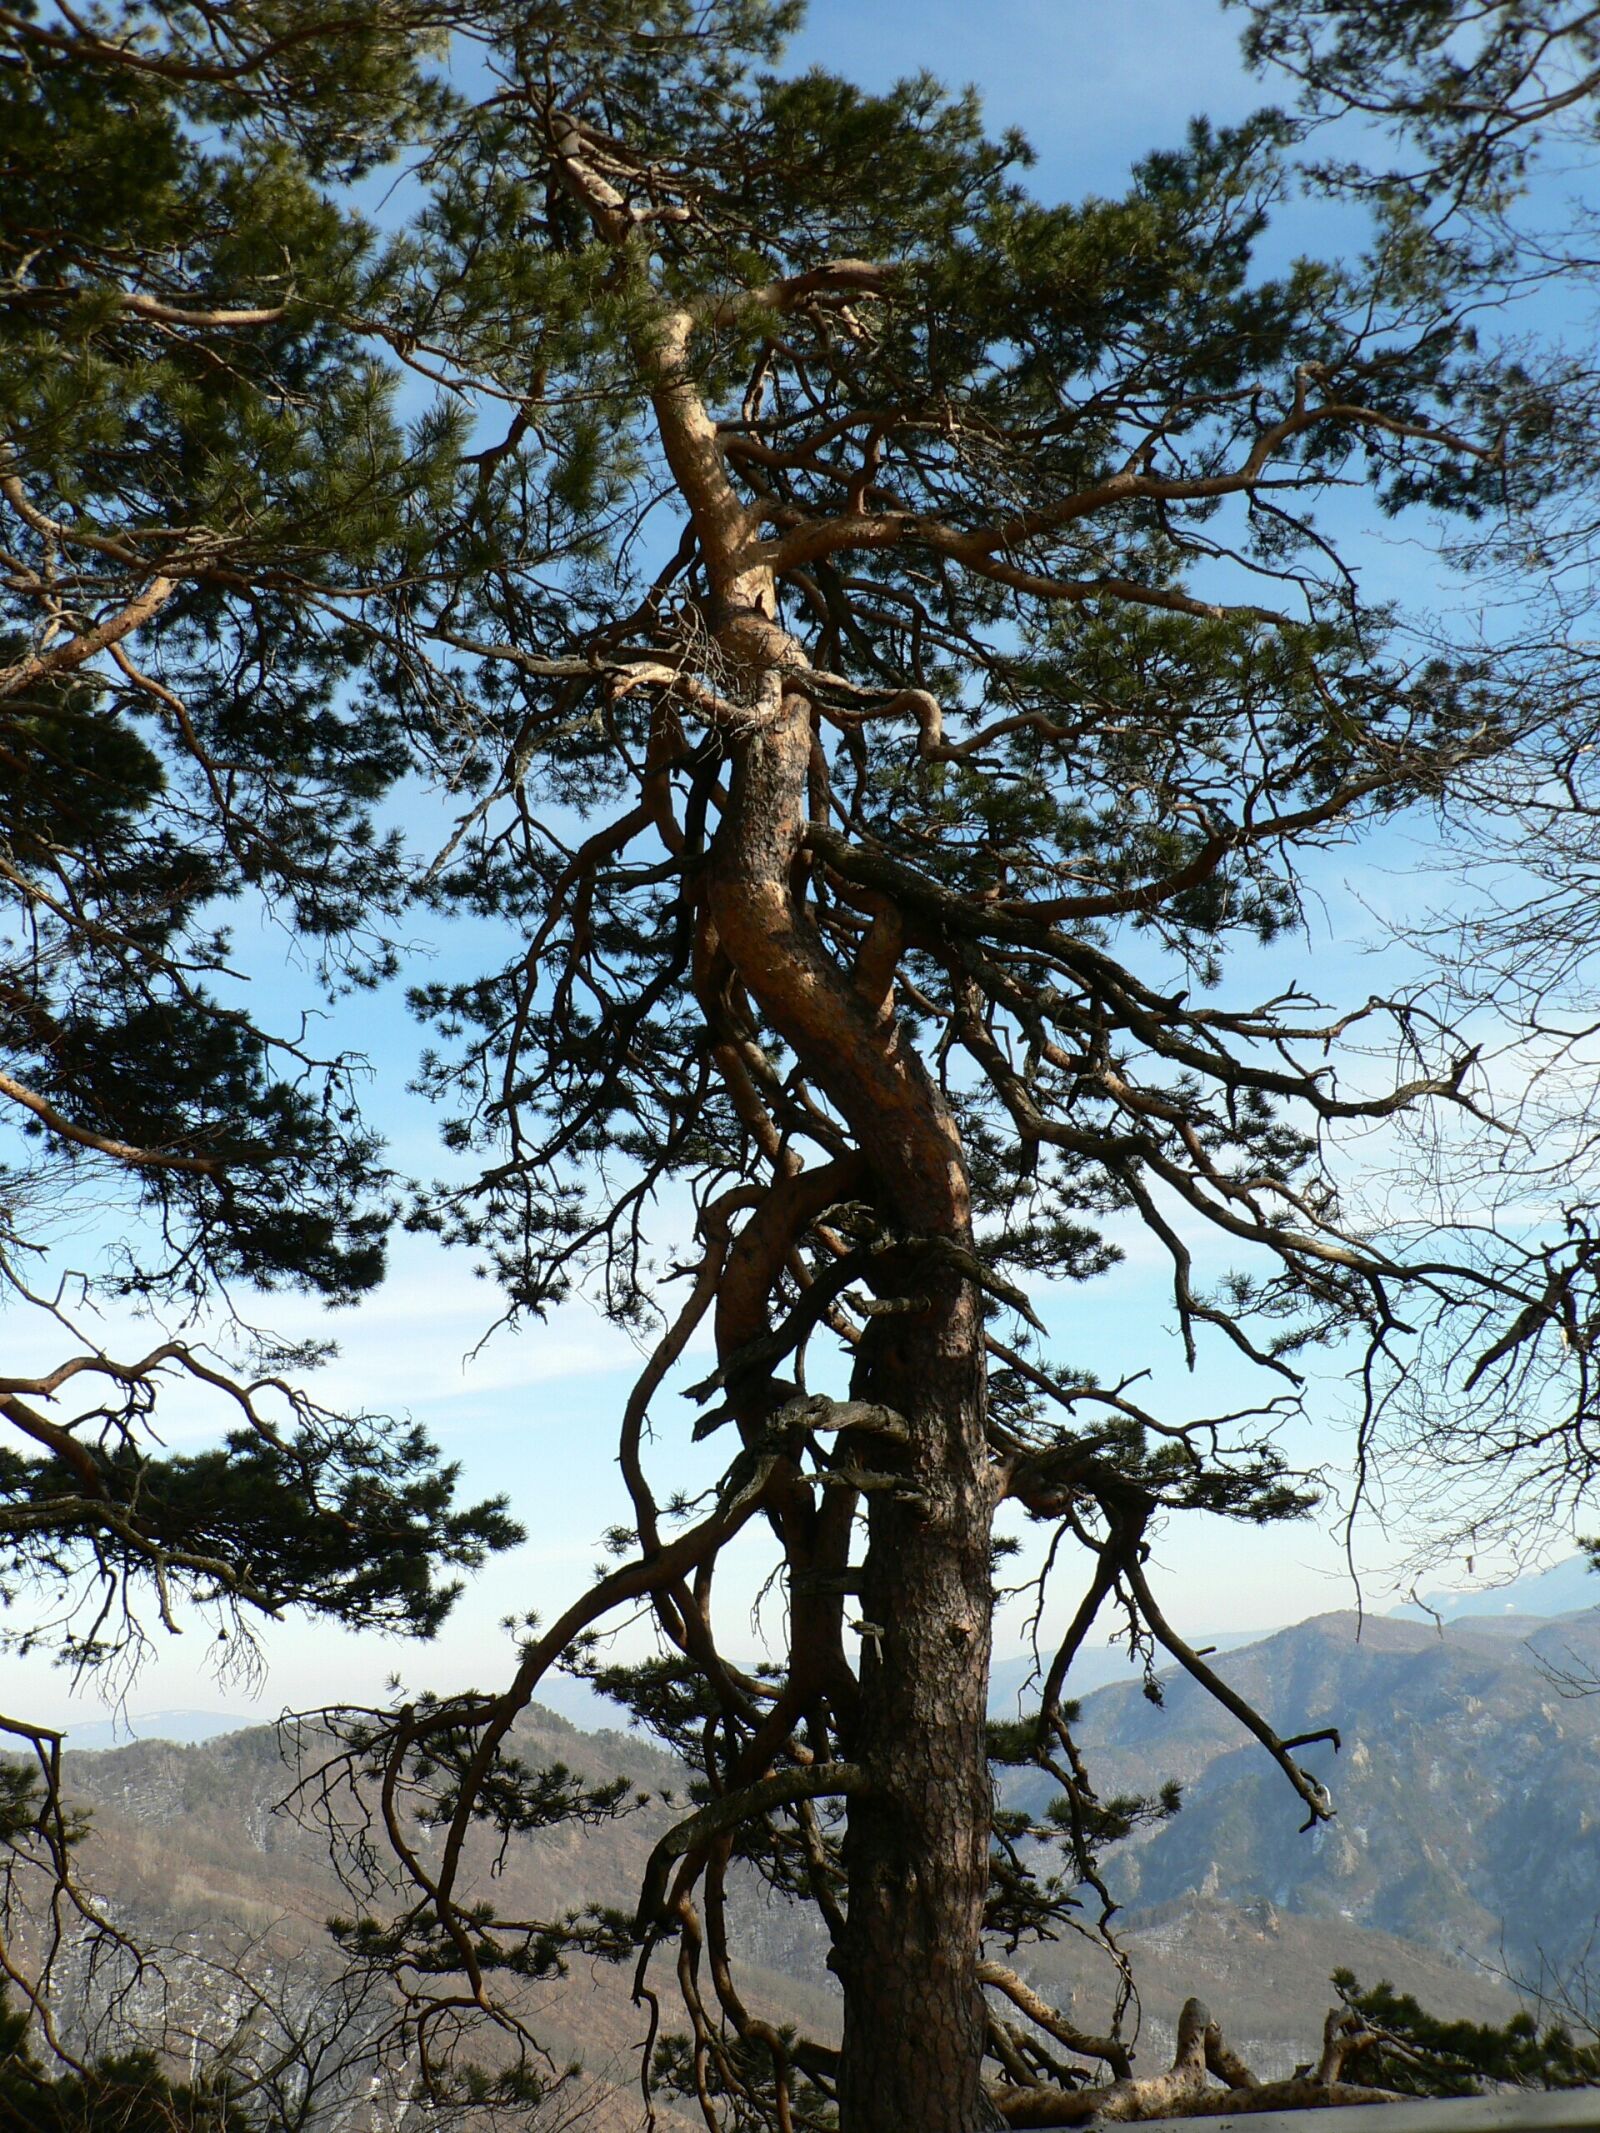 Panasonic DMC-FZ5 sample photo. Tree, pine, mountains photography